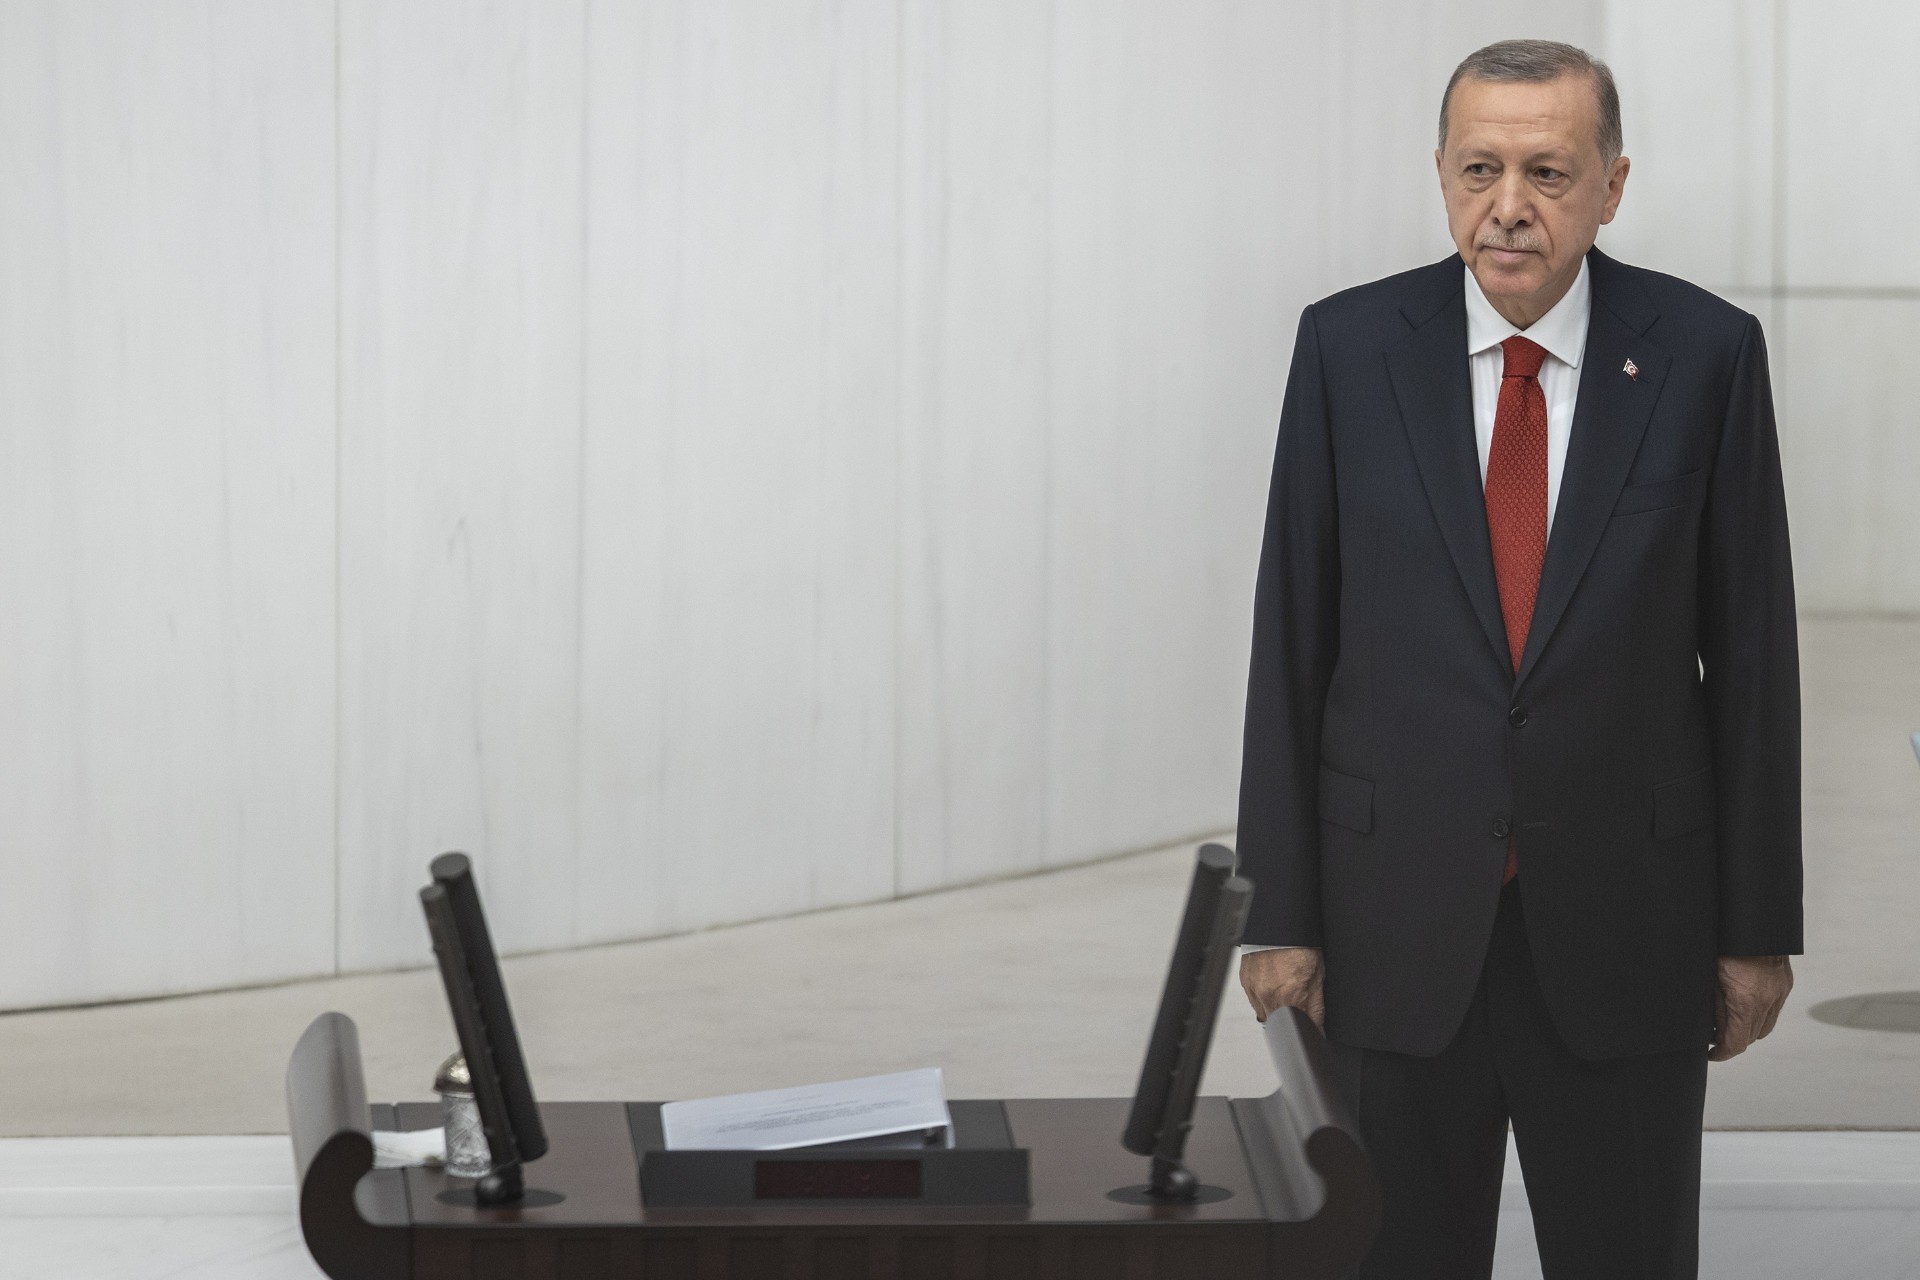 TBMM 27. dönem 6. yasama yılı başladı | Erdoğan'dan Meclis açılışında seçim hatırlatması - Evrensel